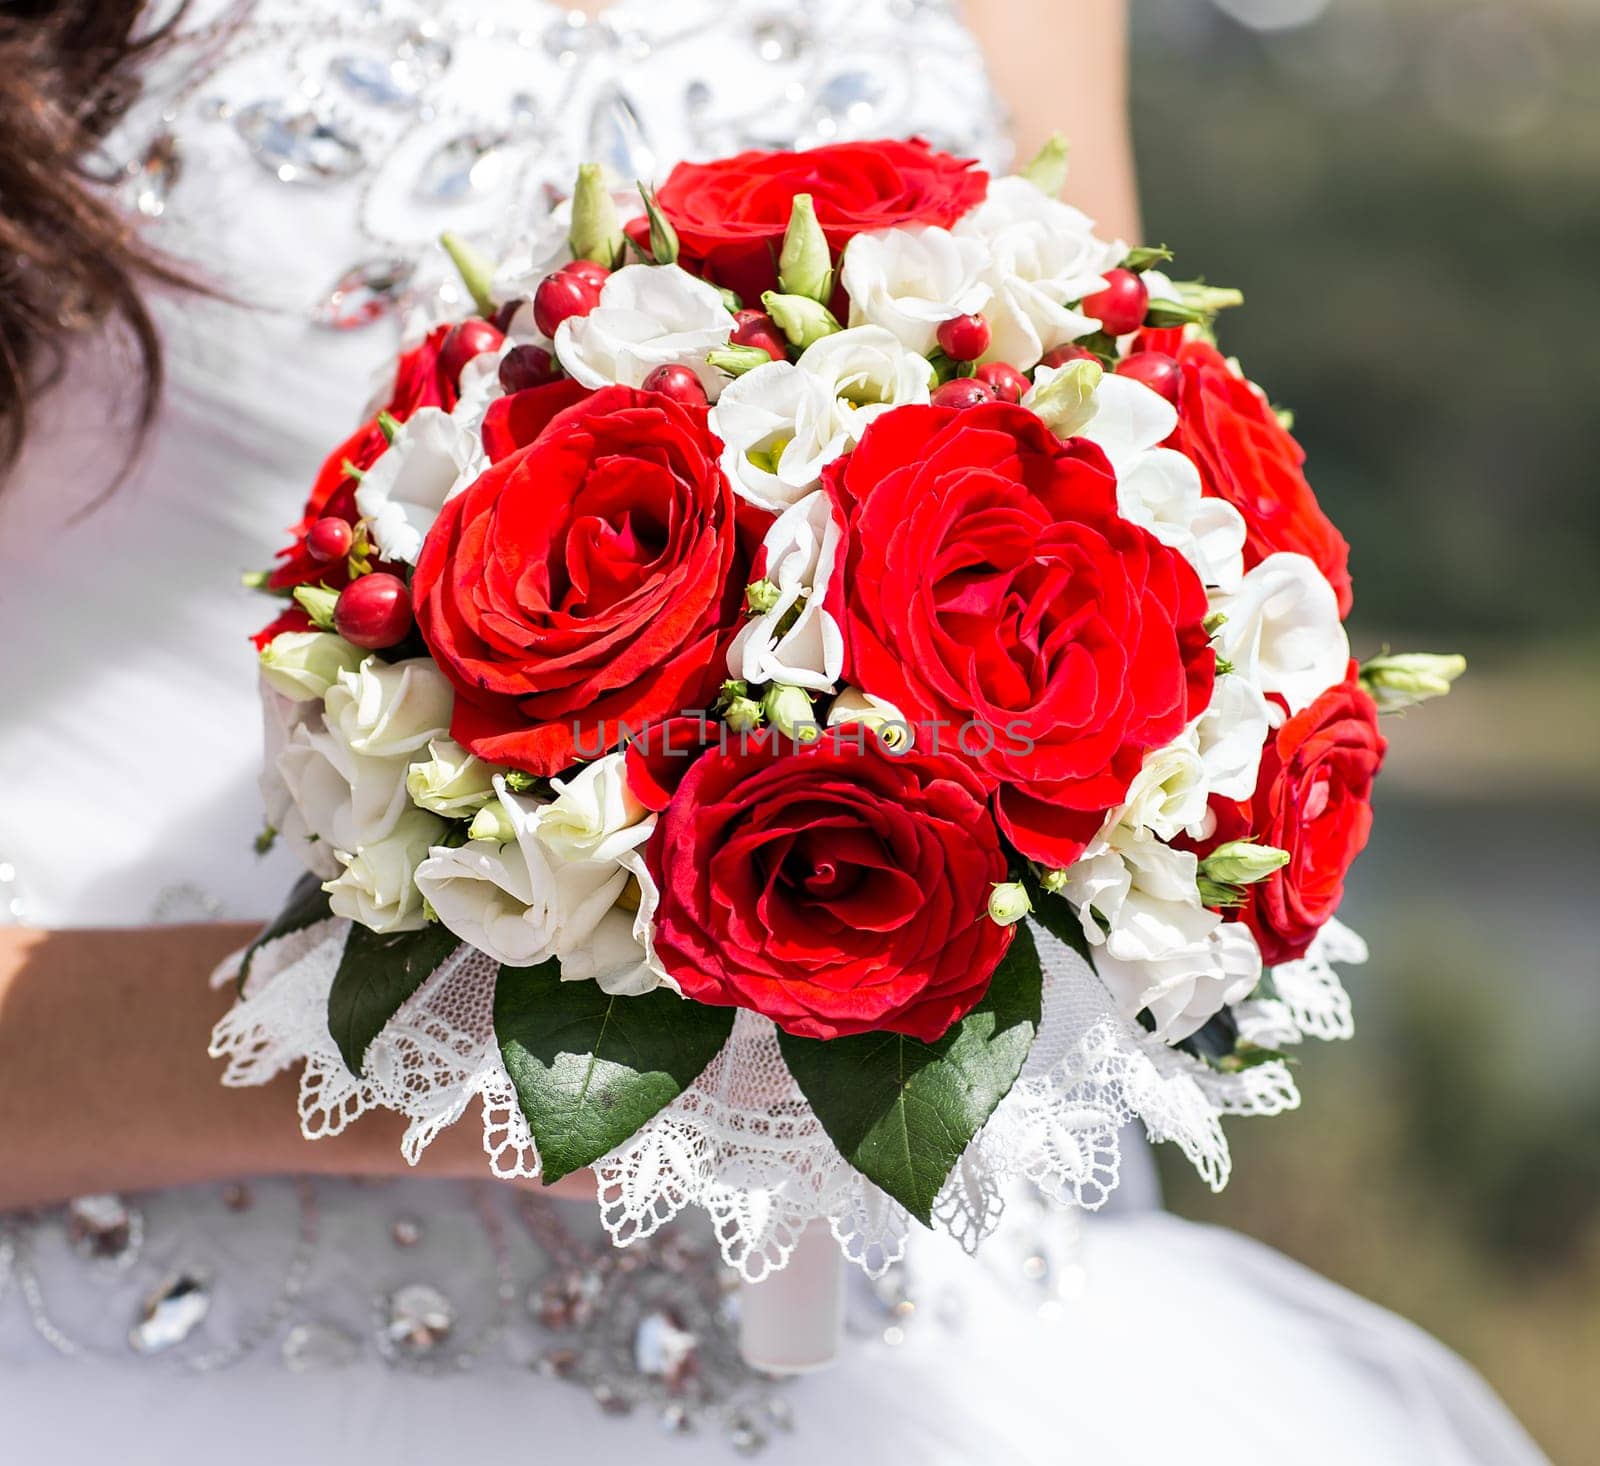 Beautiful wedding bouquet in hands of the bride.